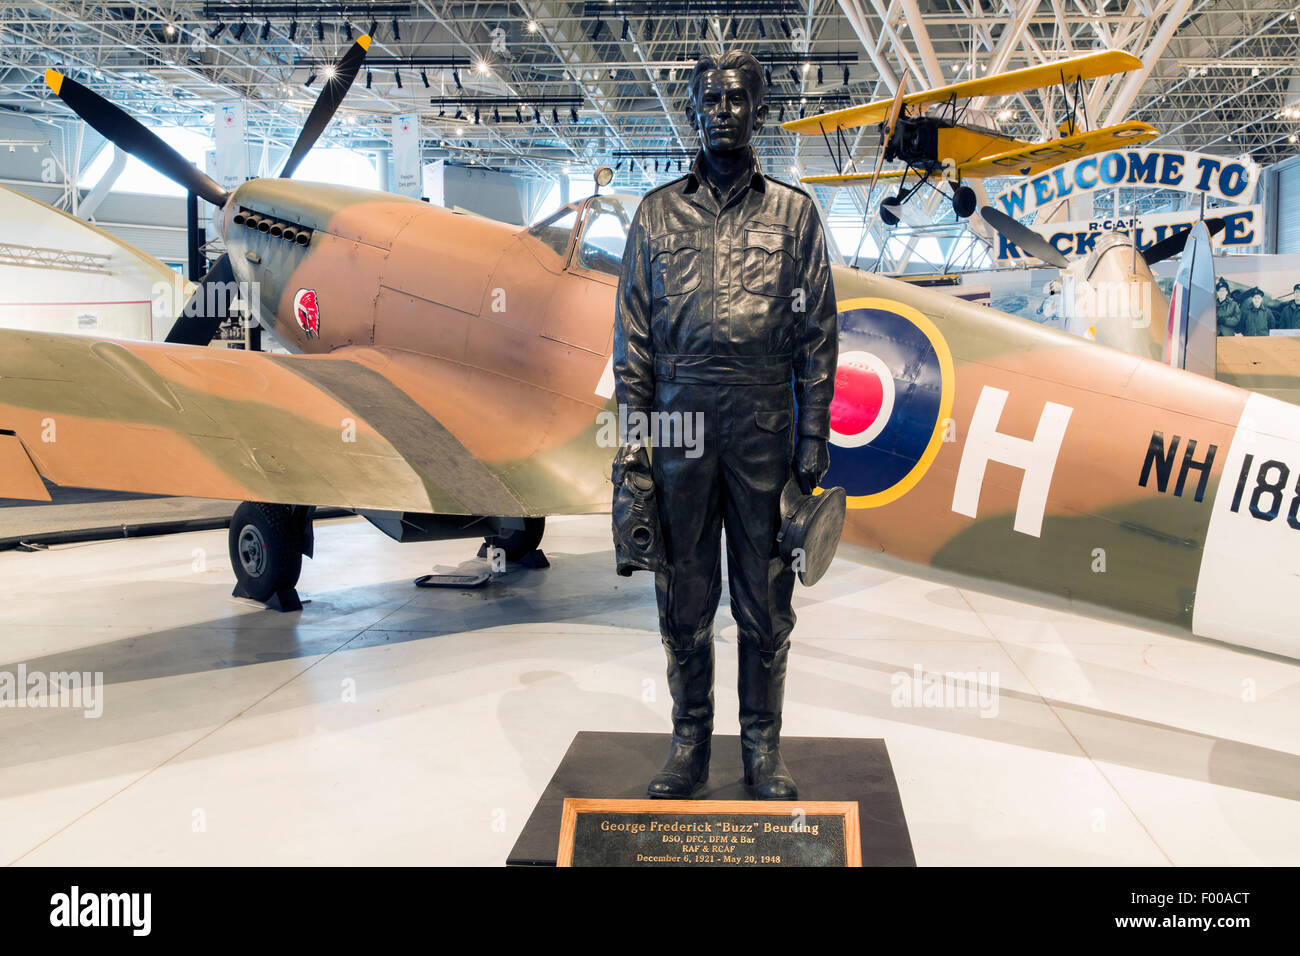 Ontario,Canadá, Ottawa, Canadá, la aviación y el Museo del Espacio, la estatua de George Frederick "Buzz" Beurling, piloto de combate canadienses Foto de stock